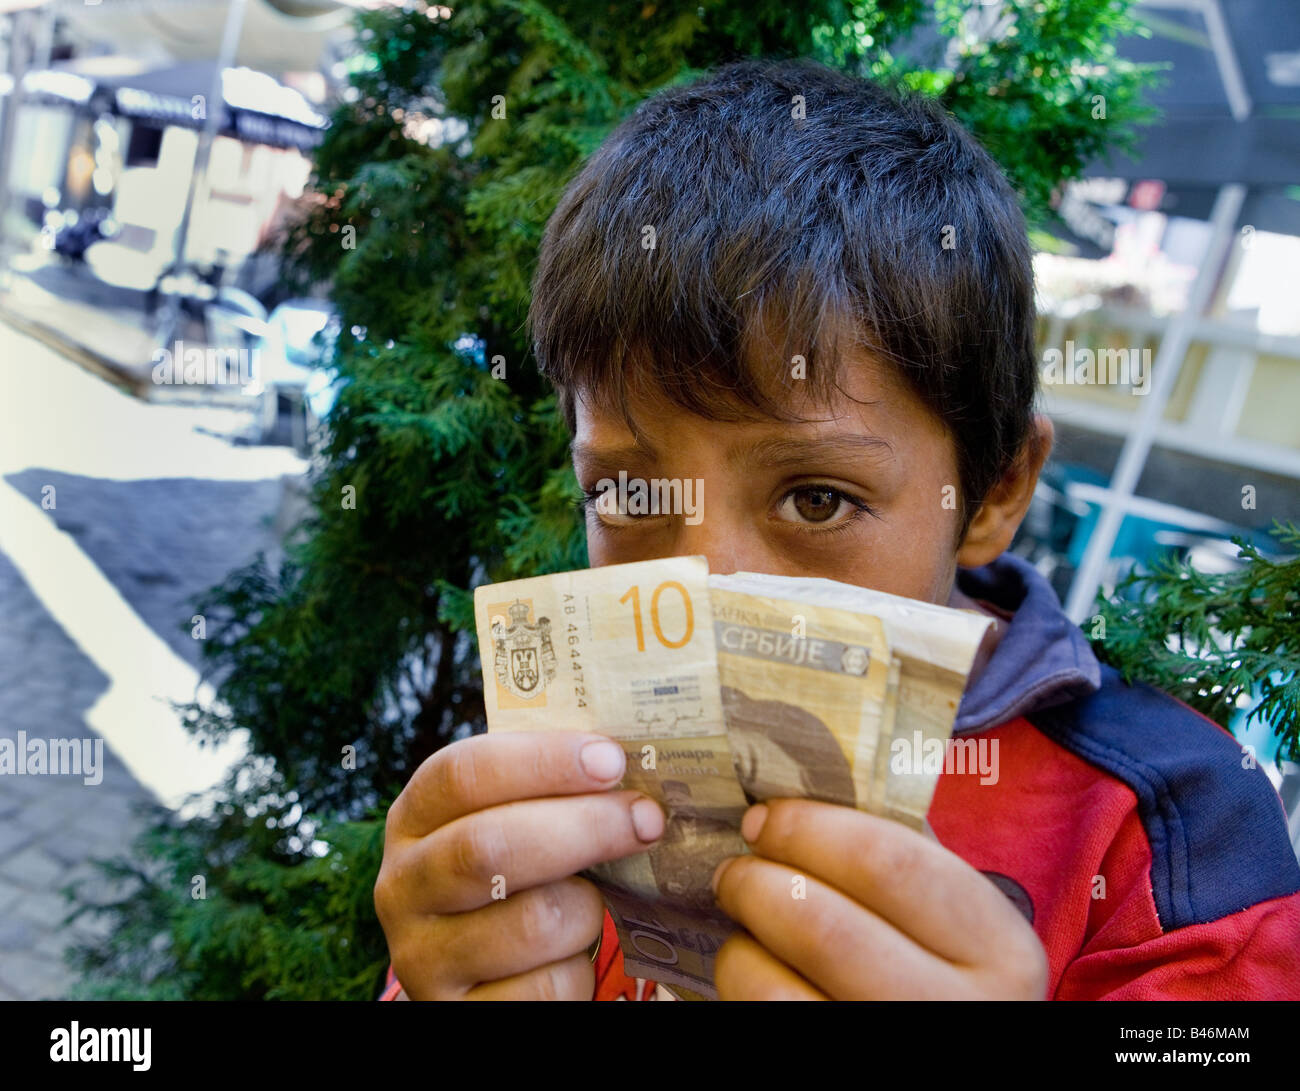 A Roma o ragazzo zingaro mendicante per le strade di Nis Serbia con alcuni dei soldi ha raccolto di elemosina Foto Stock